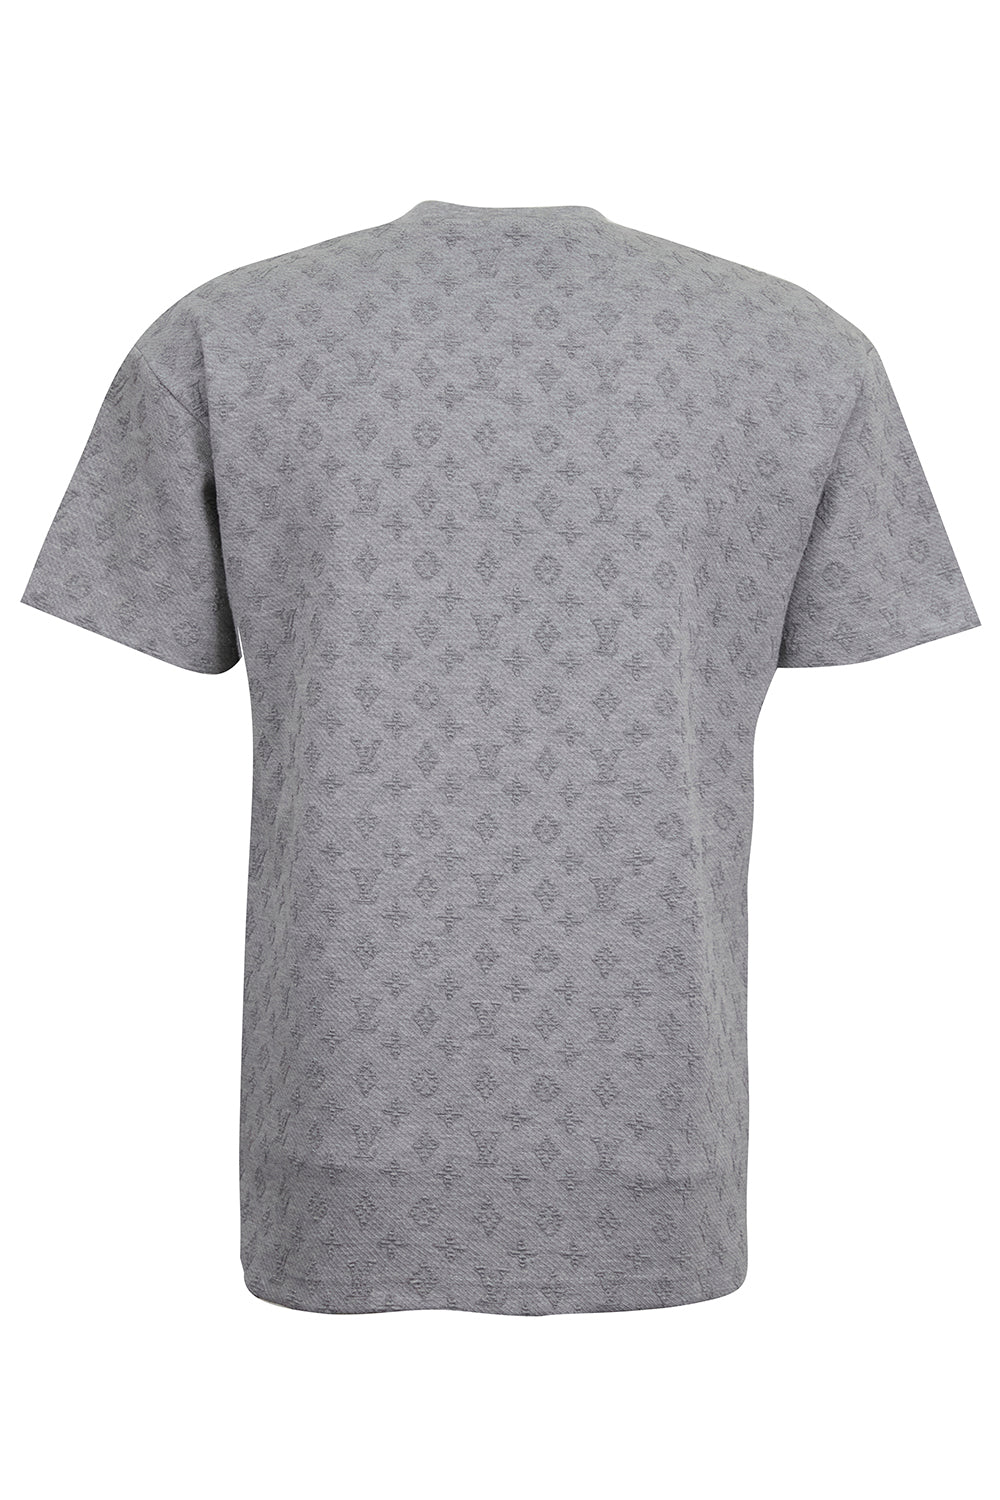 Louis Vuitton Signature 3D Pocket Monogram T-Shirt, White, XXL